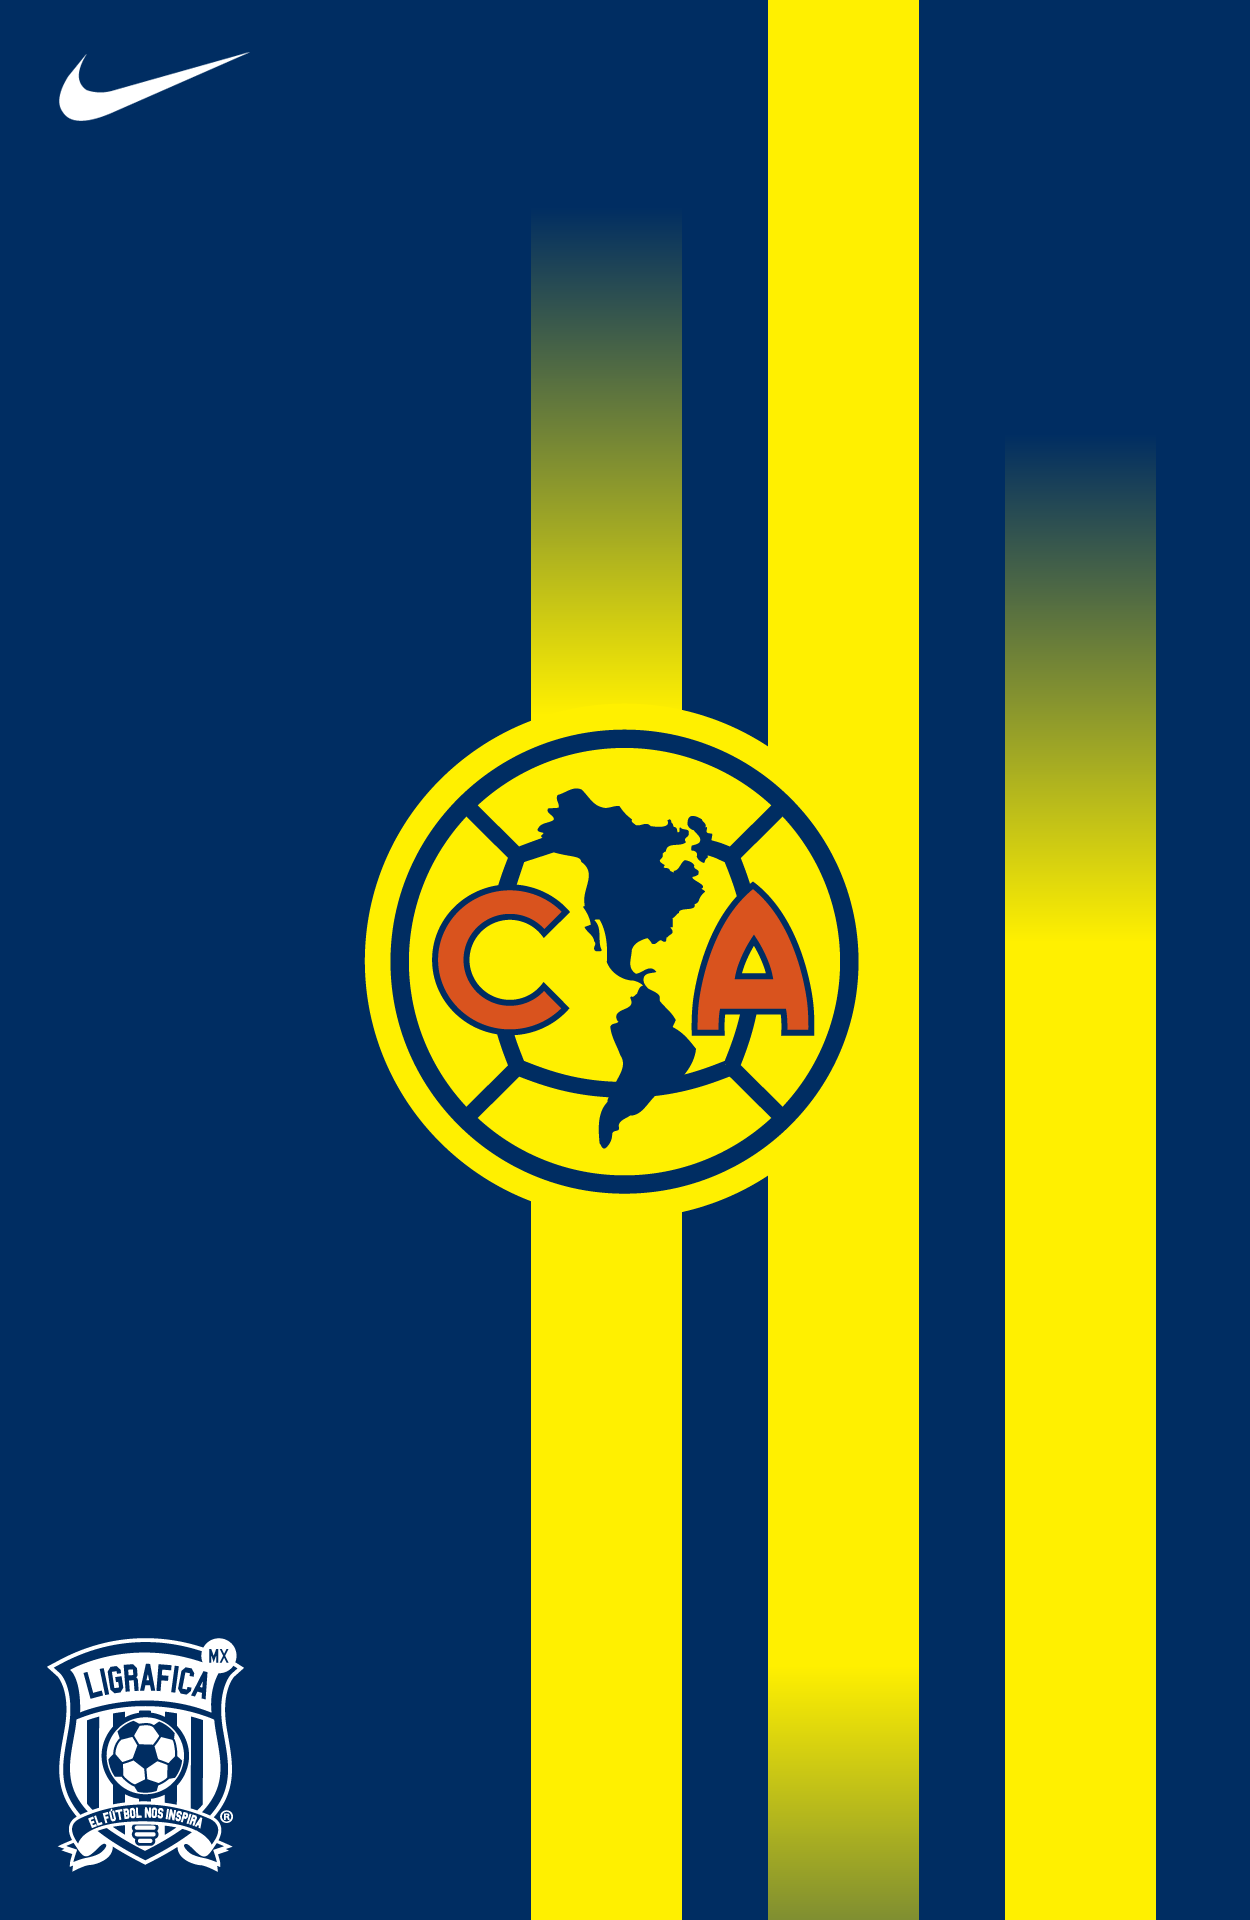 Club América Nike. Club américa, Club de fútbol america, Imagenes